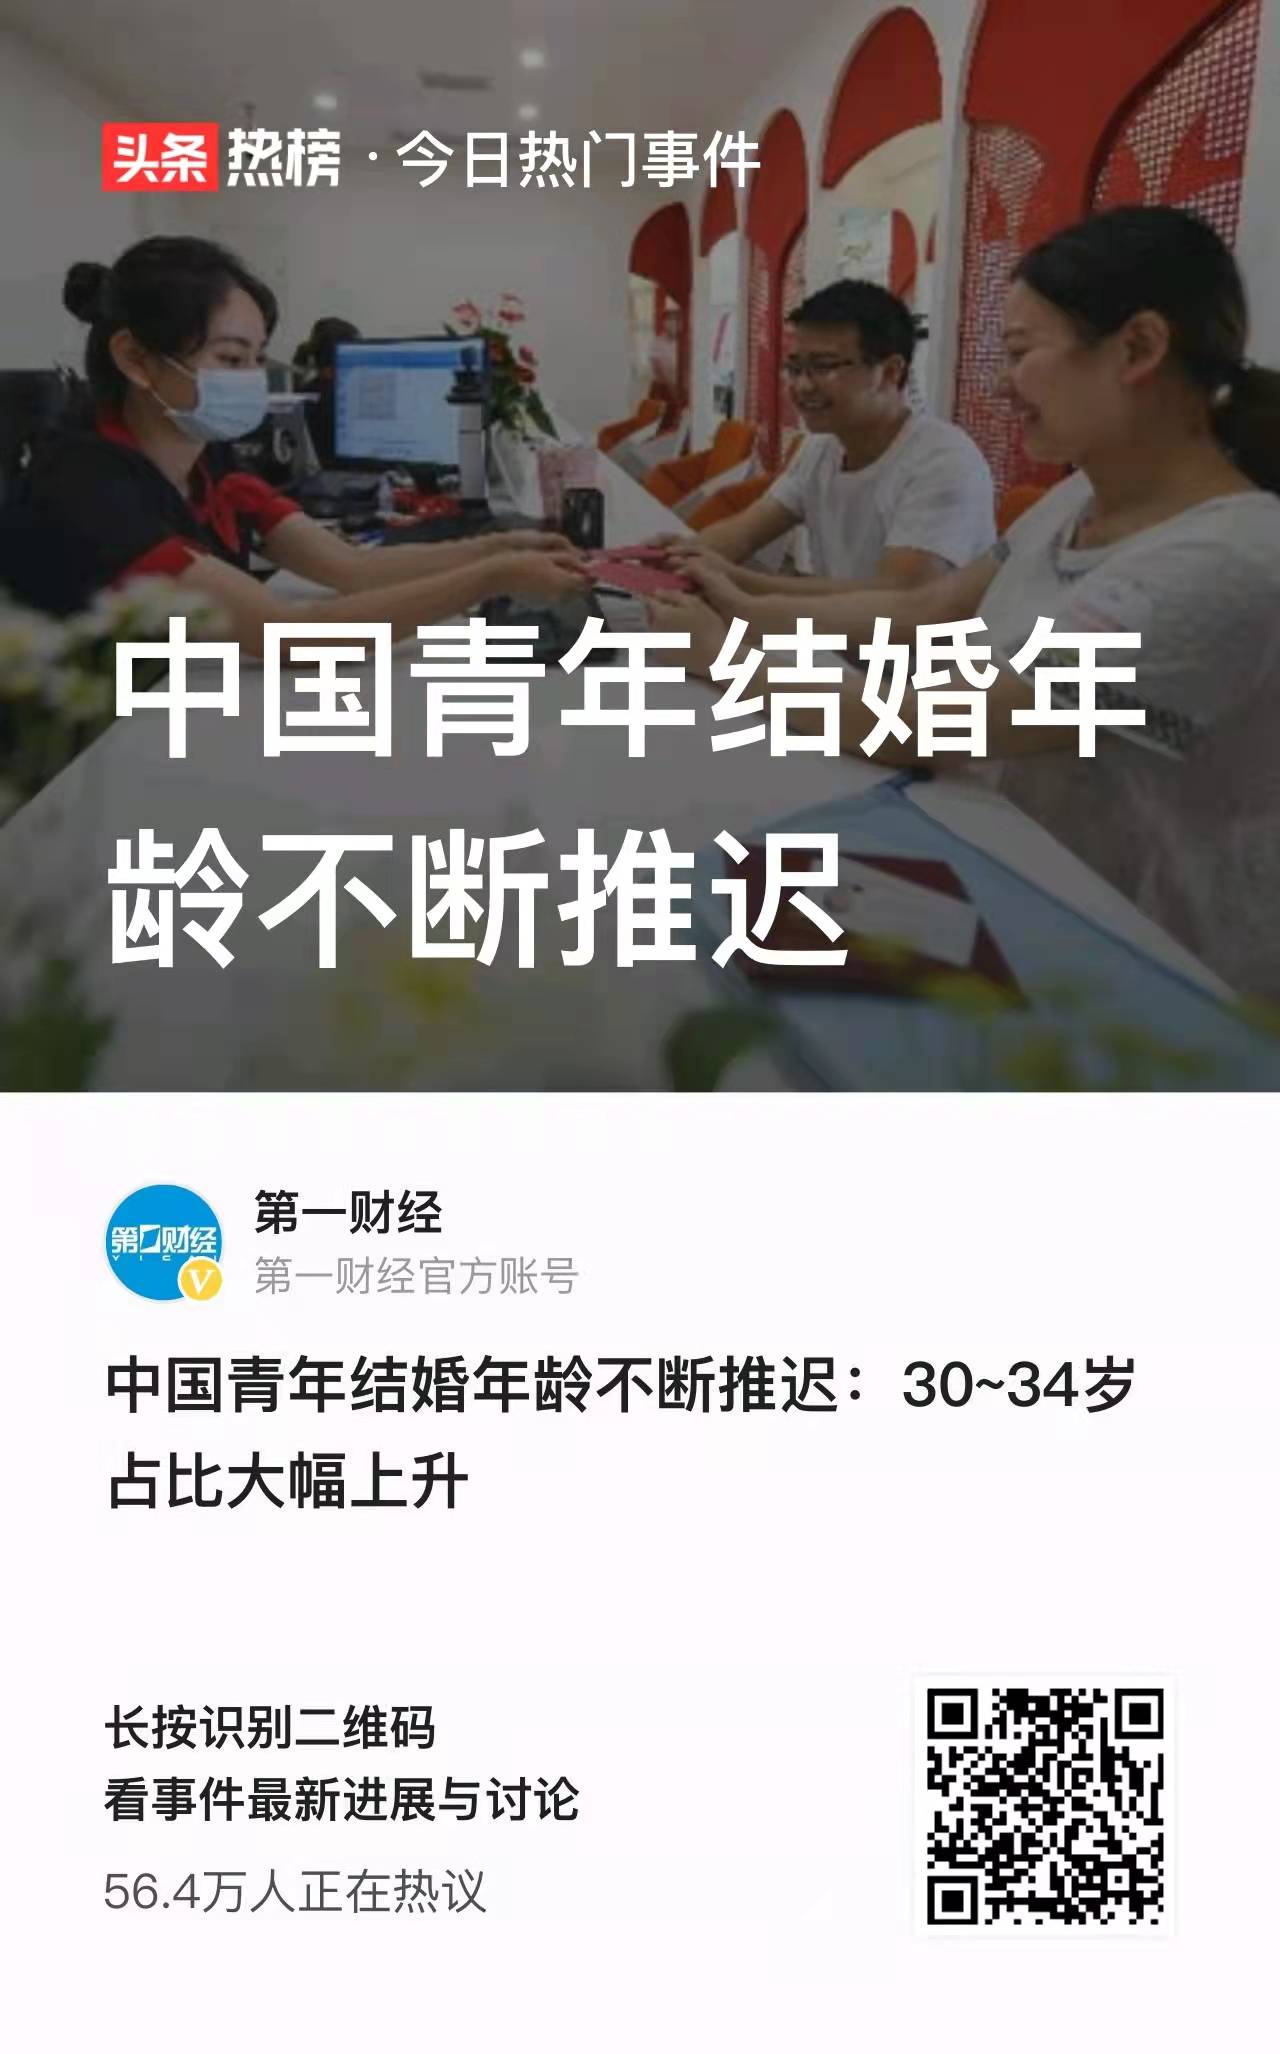 中国青年结婚年龄不断推迟 30